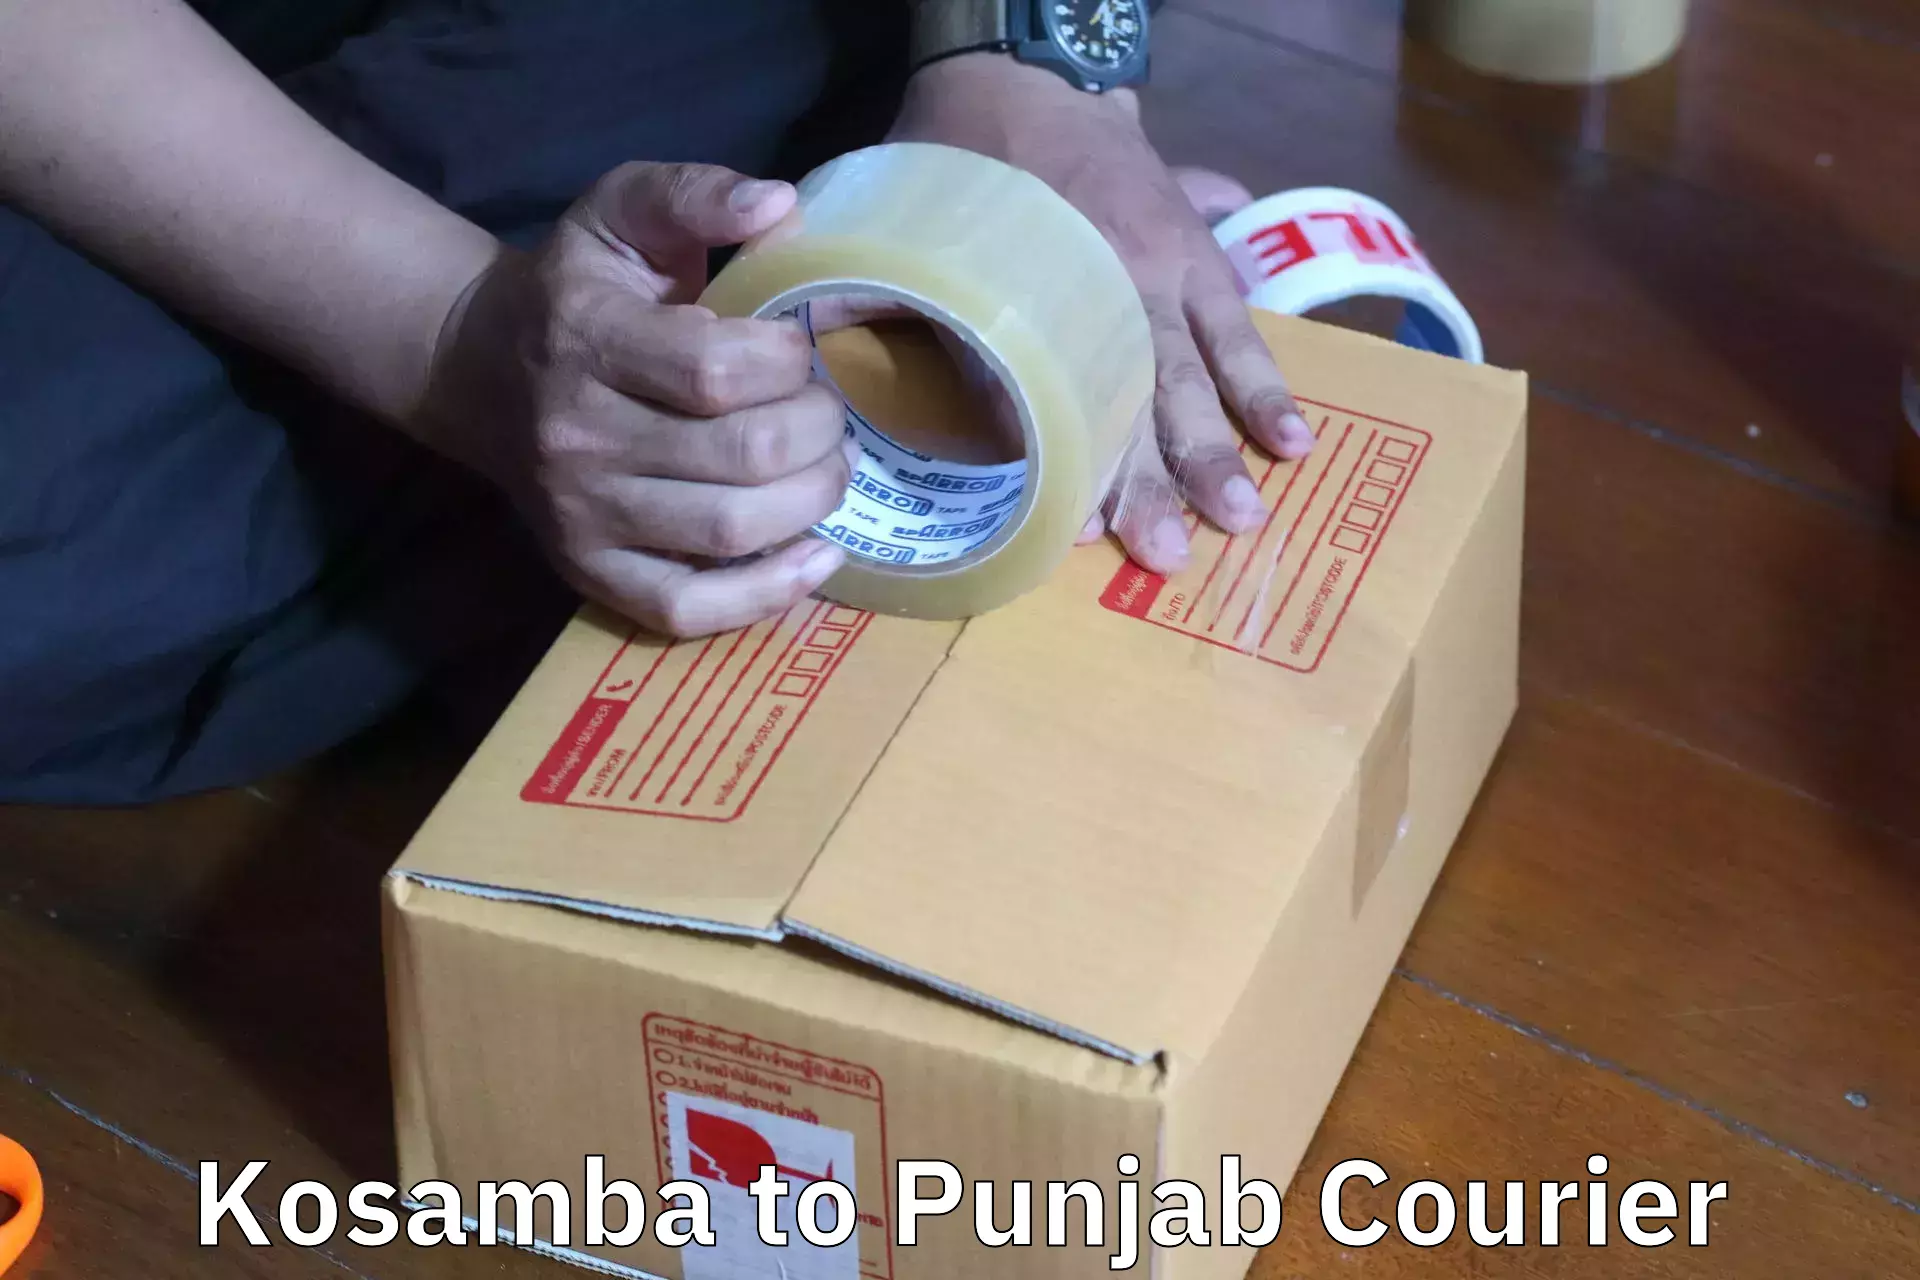 Furniture moving assistance in Kosamba to Punjab